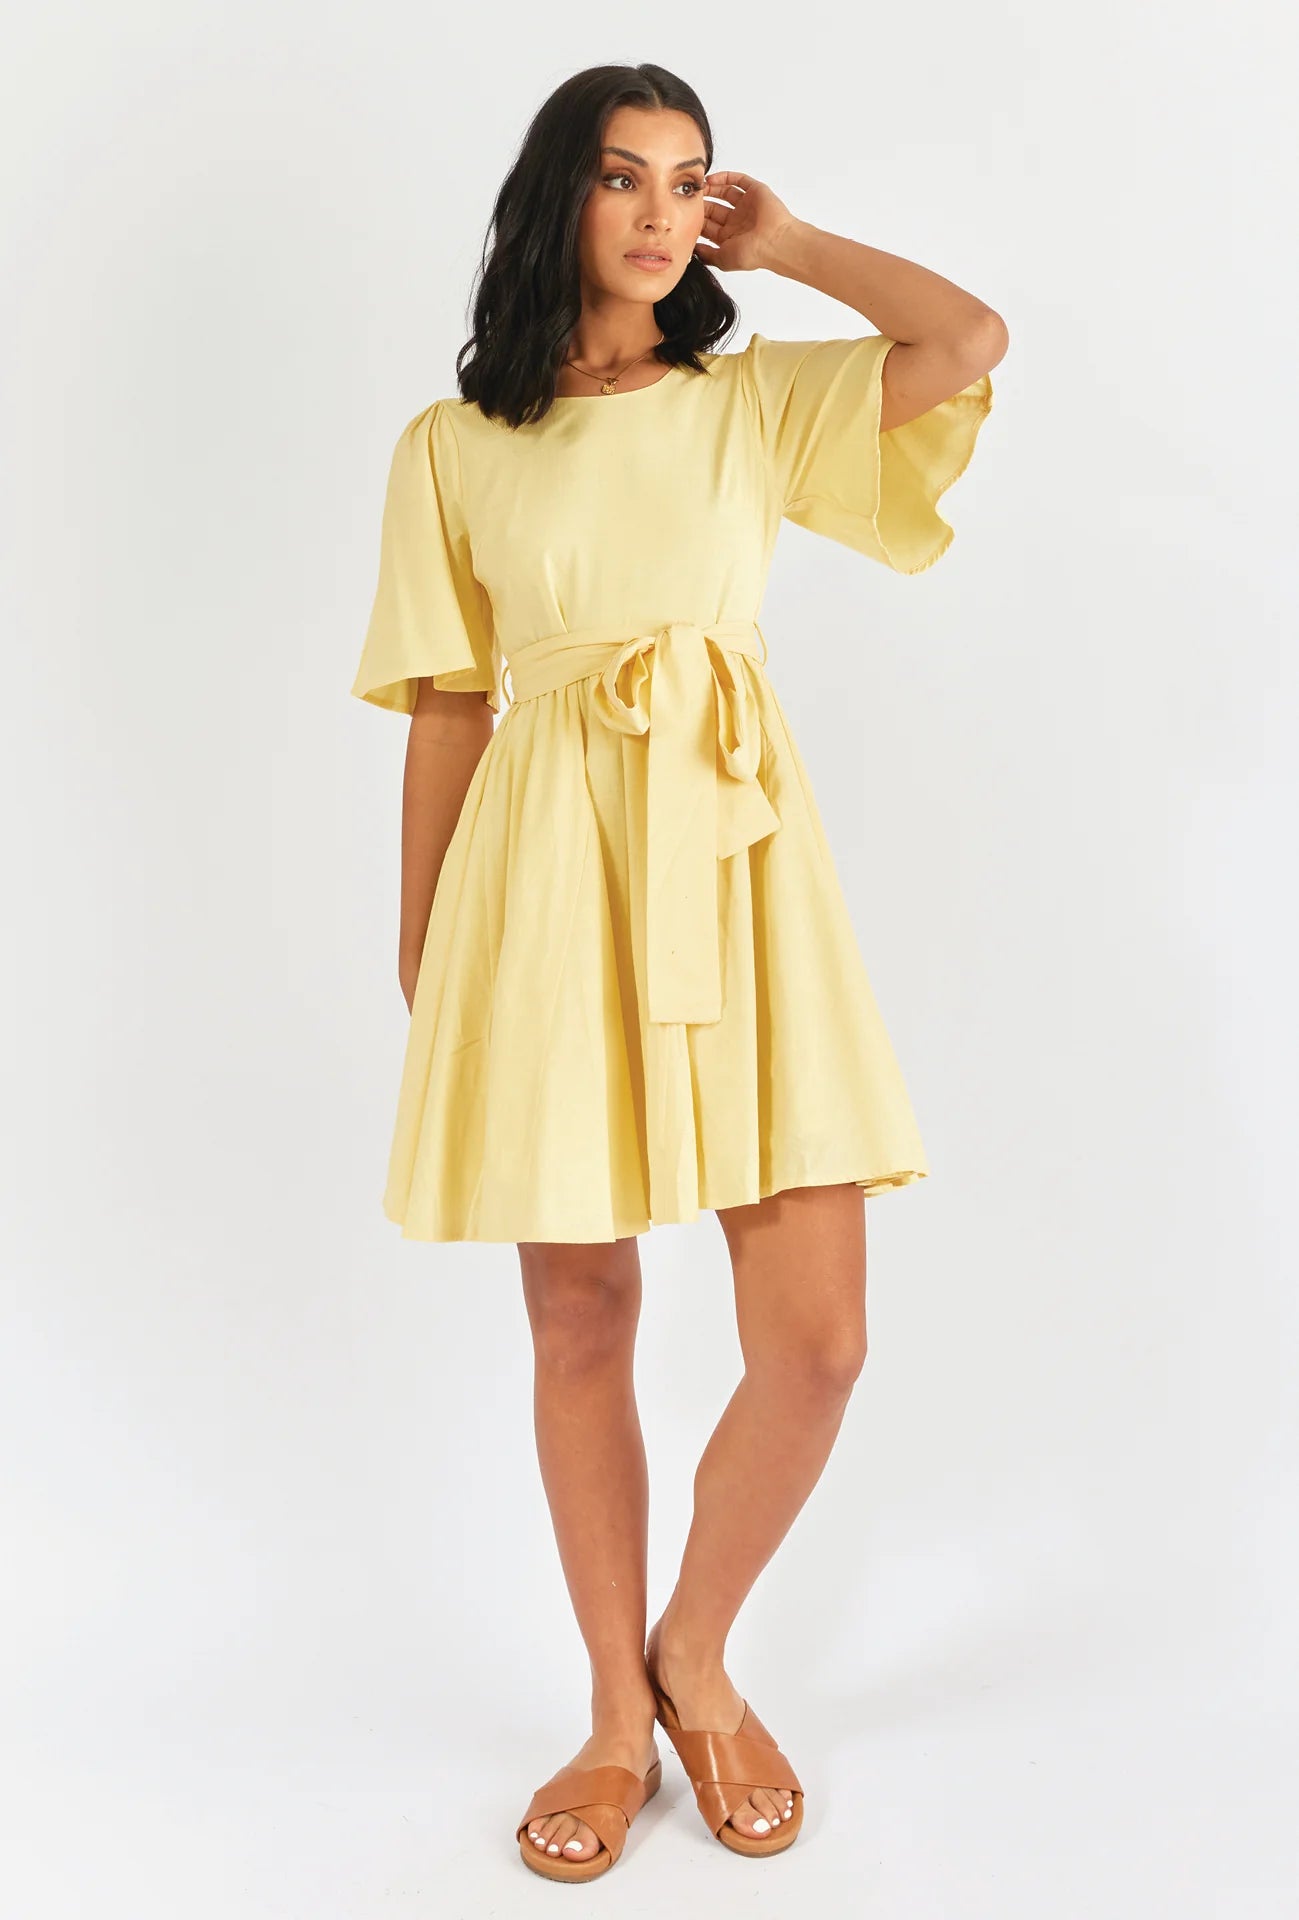 Lined Lemon Dress - Linen/Cotton